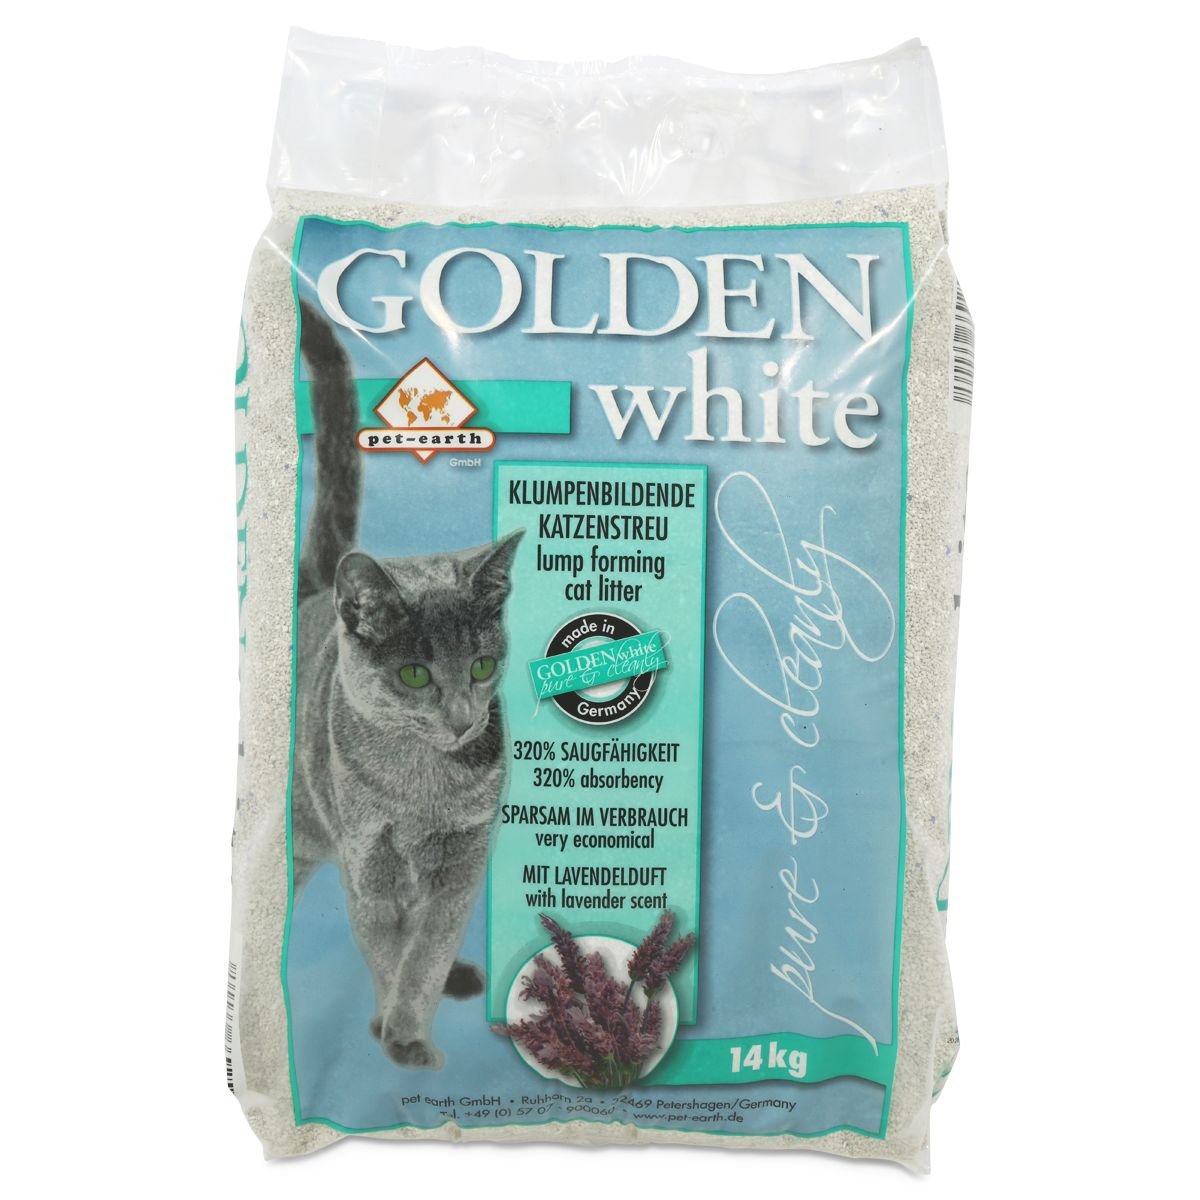 Golden White mit Lavendelduft 14kg